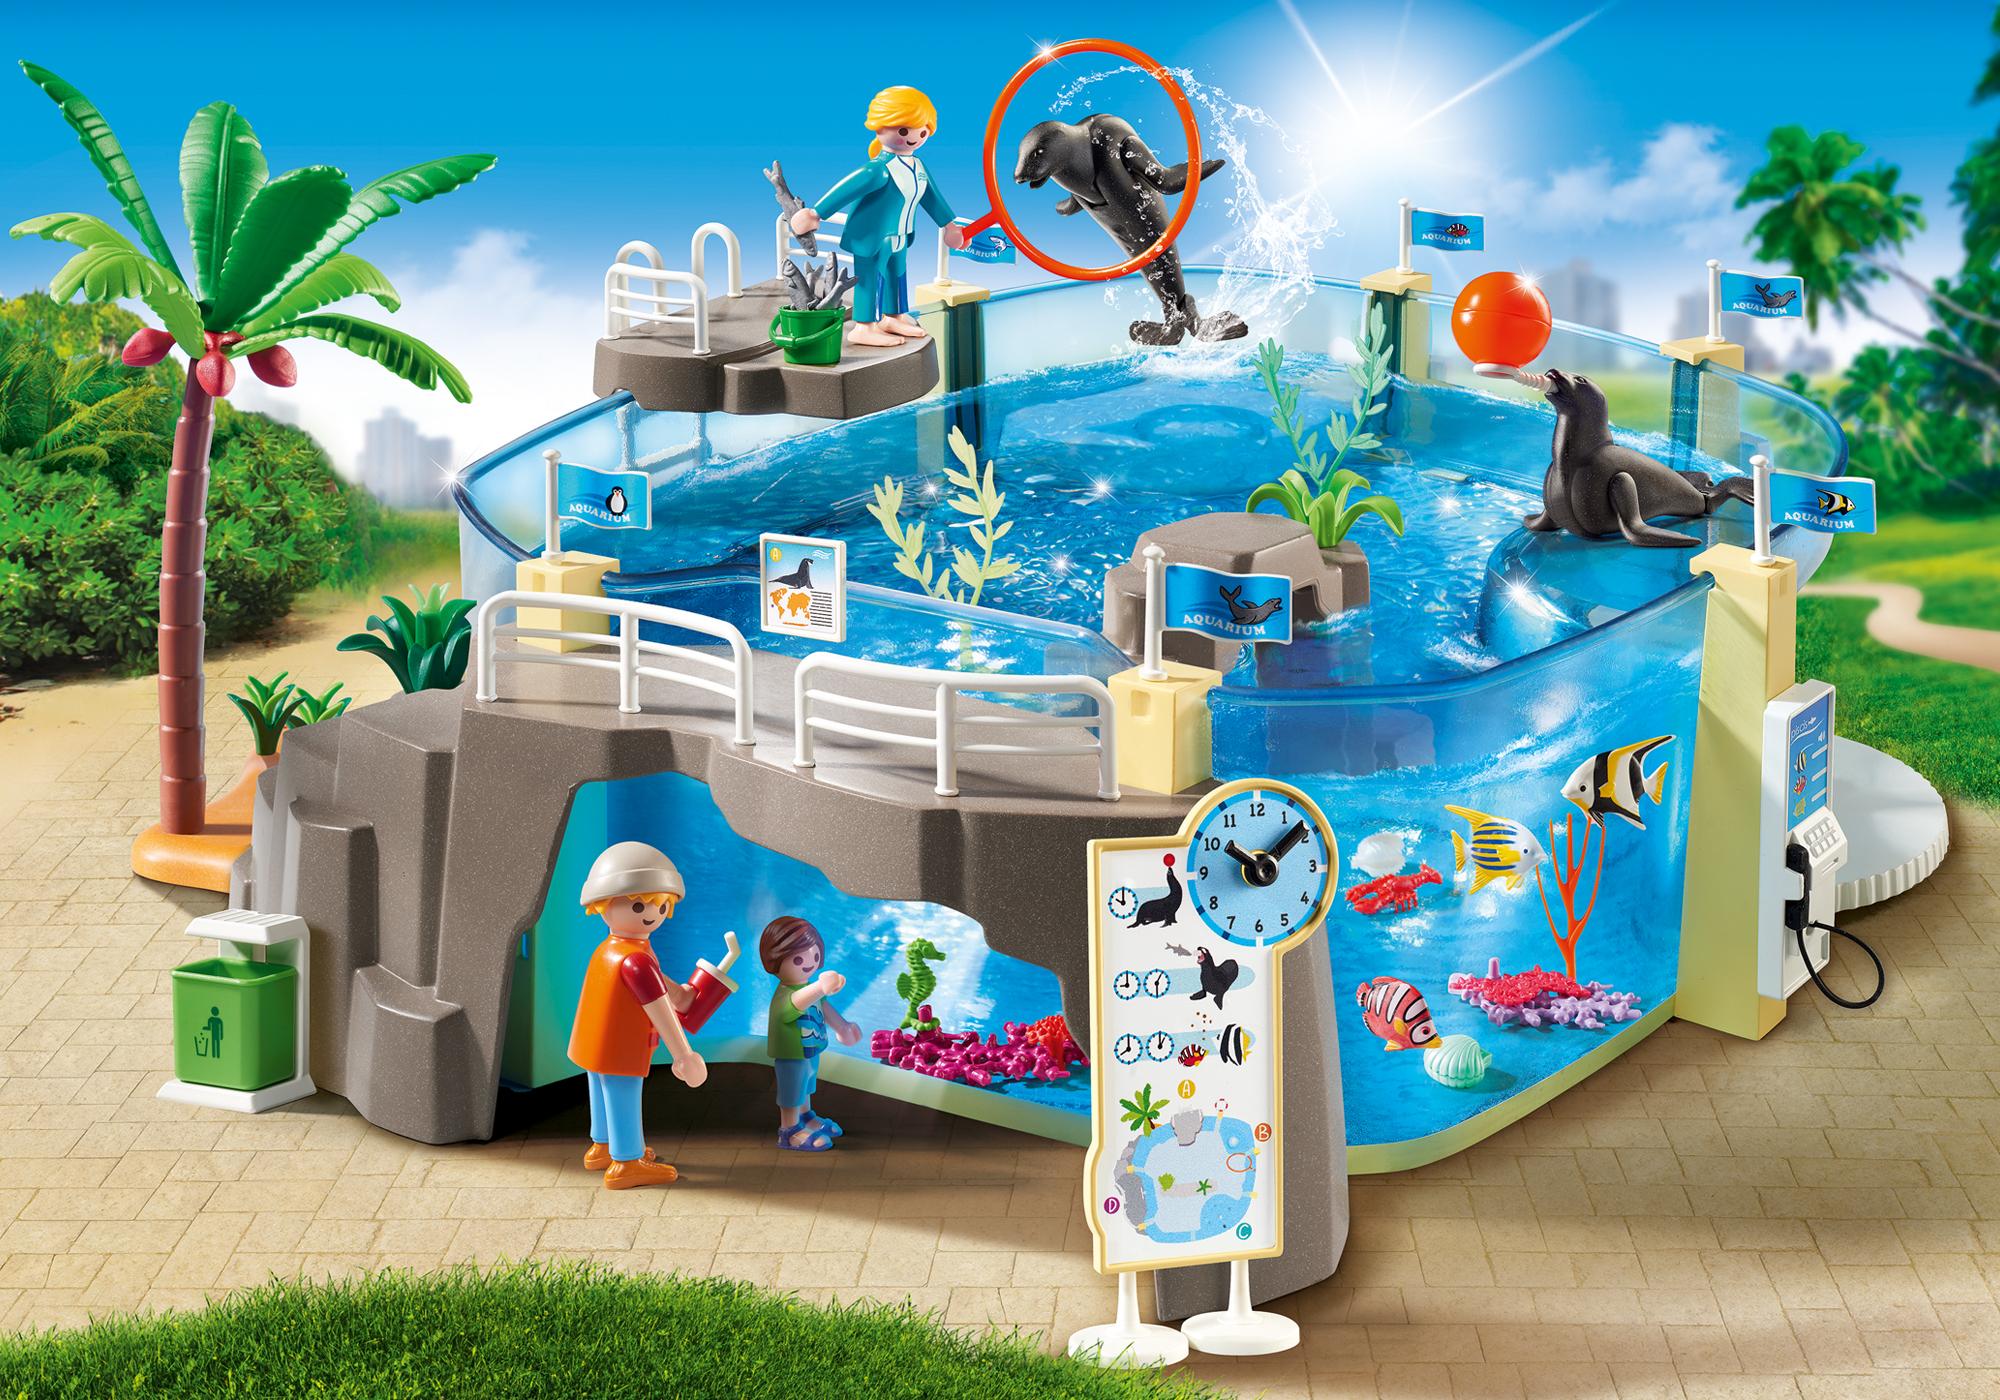 boutique aquarium playmobil